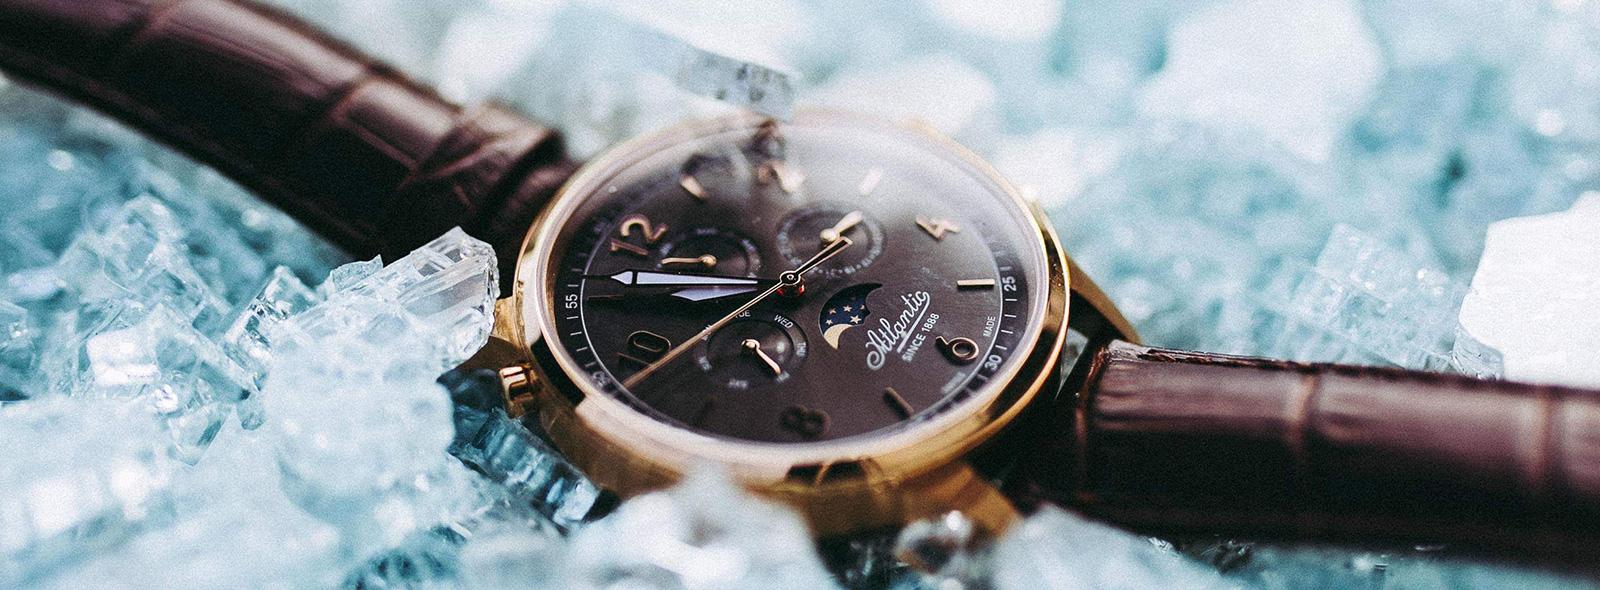 Atlantic, czyli renomowane zegarki szwajcarskie | Zegarownia.pl Blog